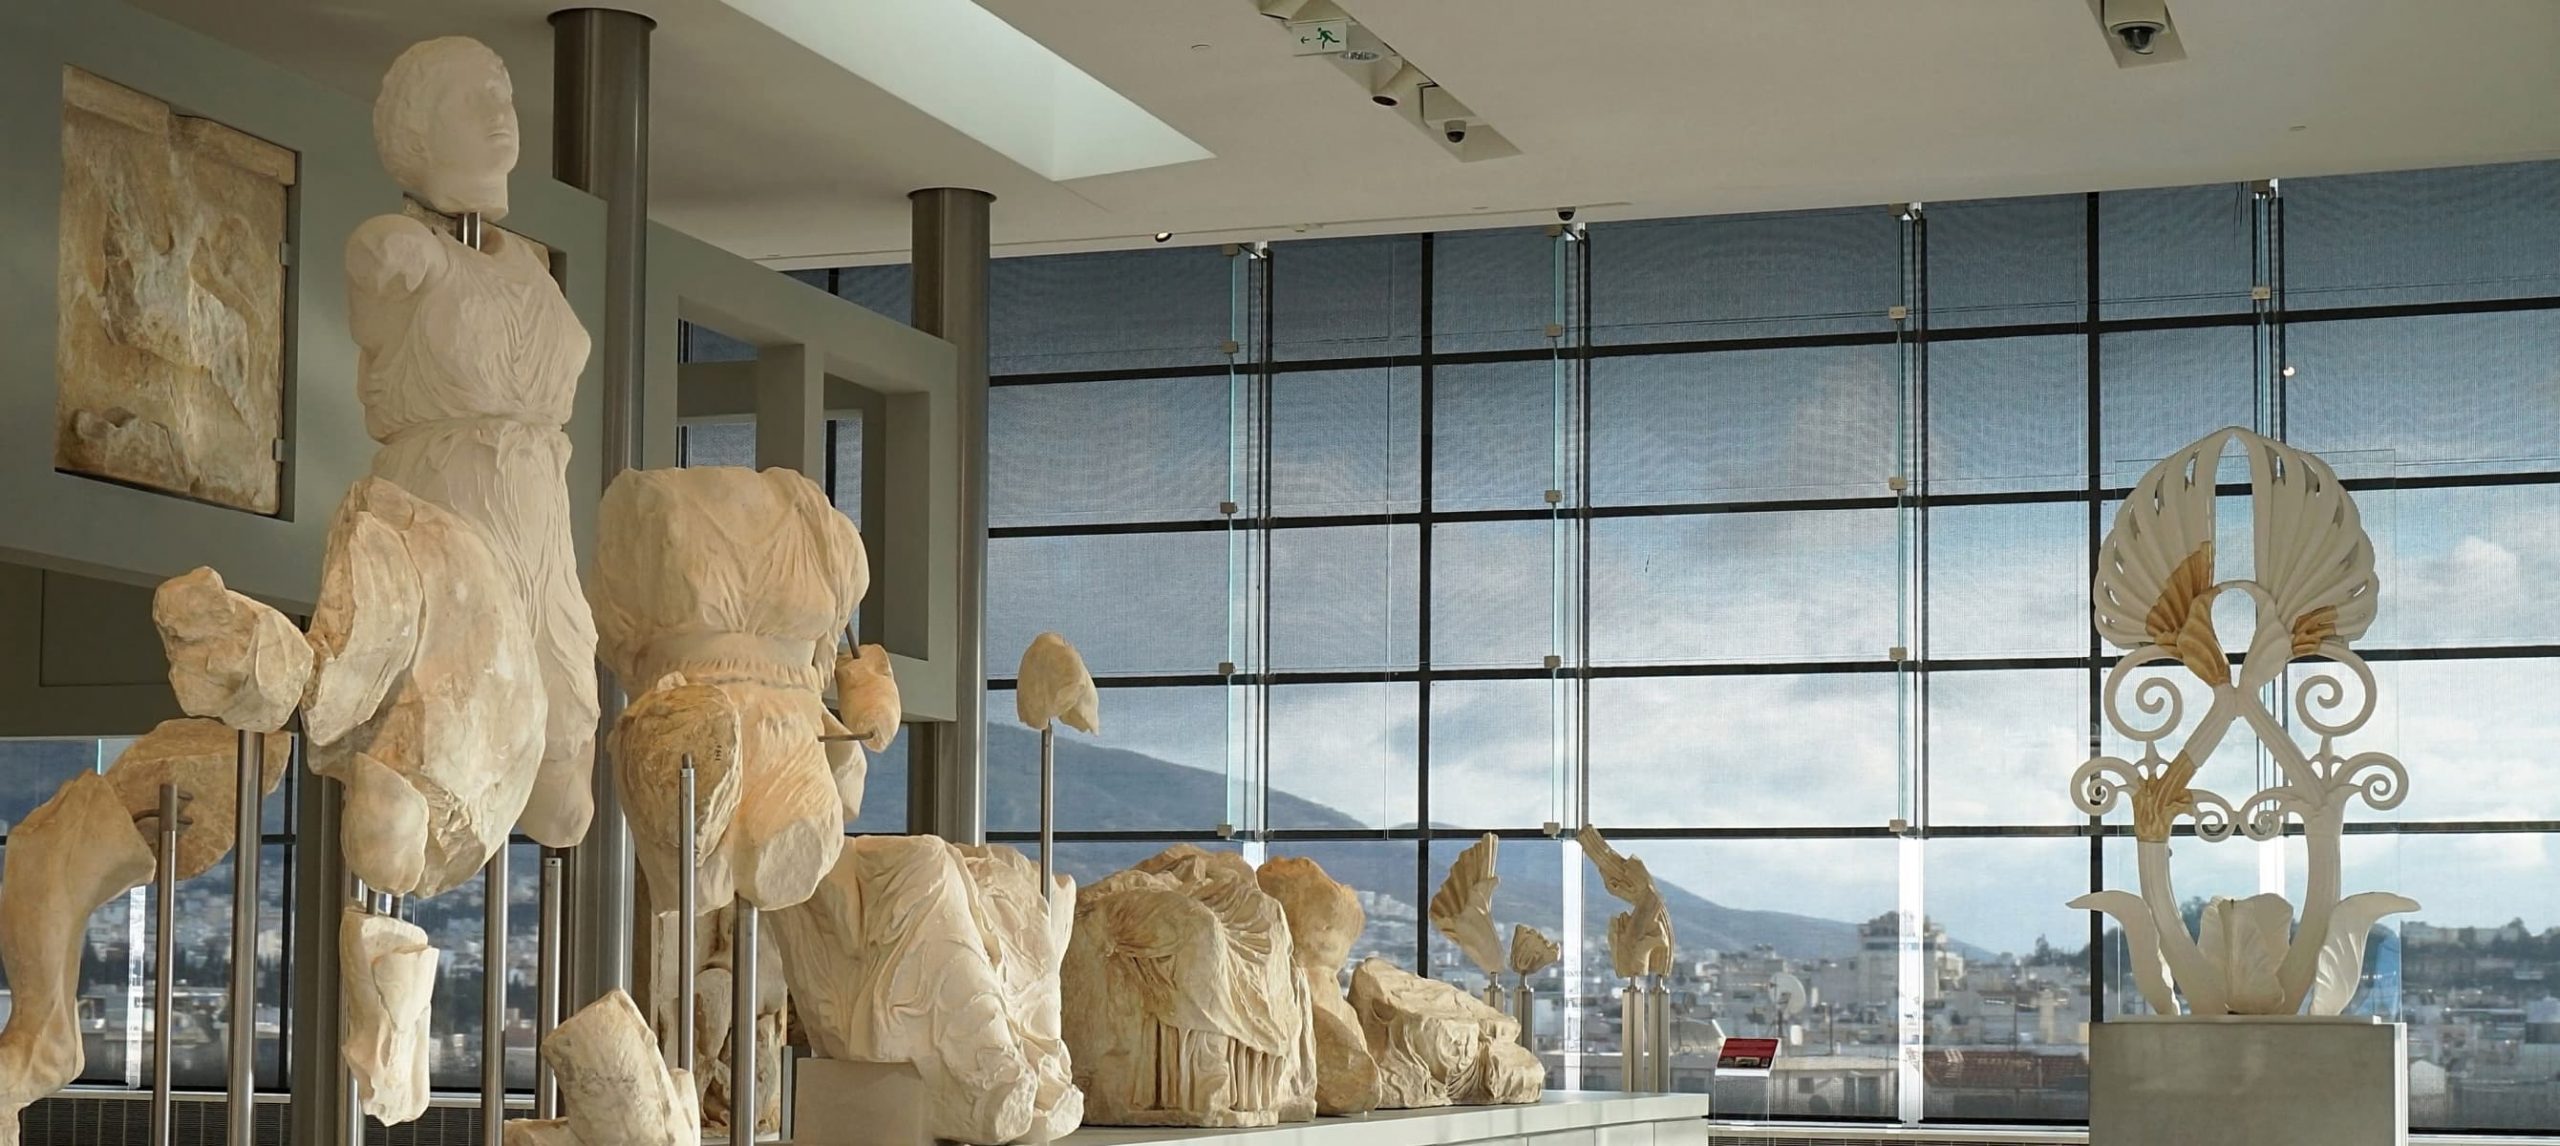 The Best Hotels Near Acropolis Museum In Greece